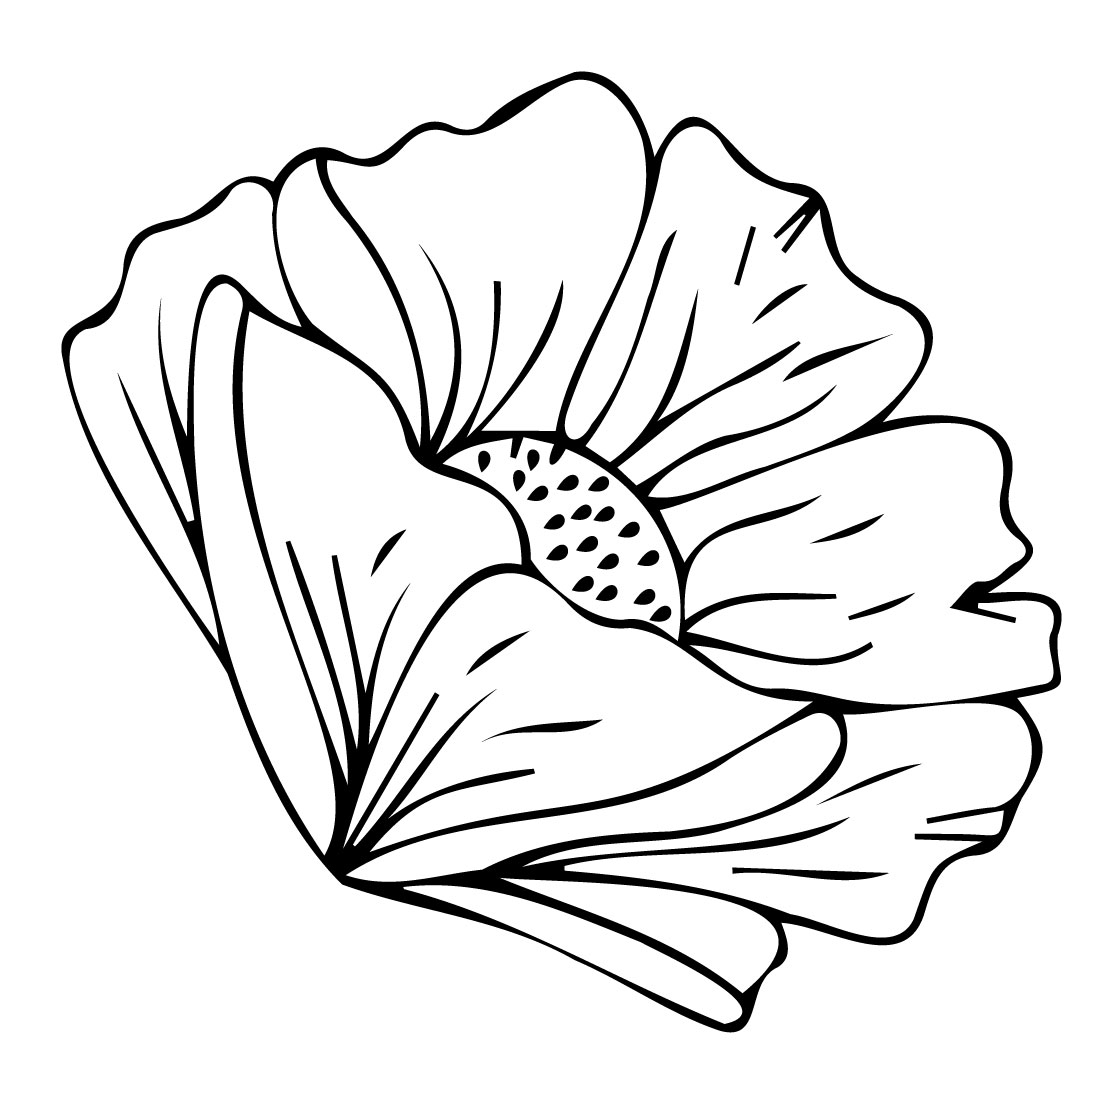 Outline poppy illustration.